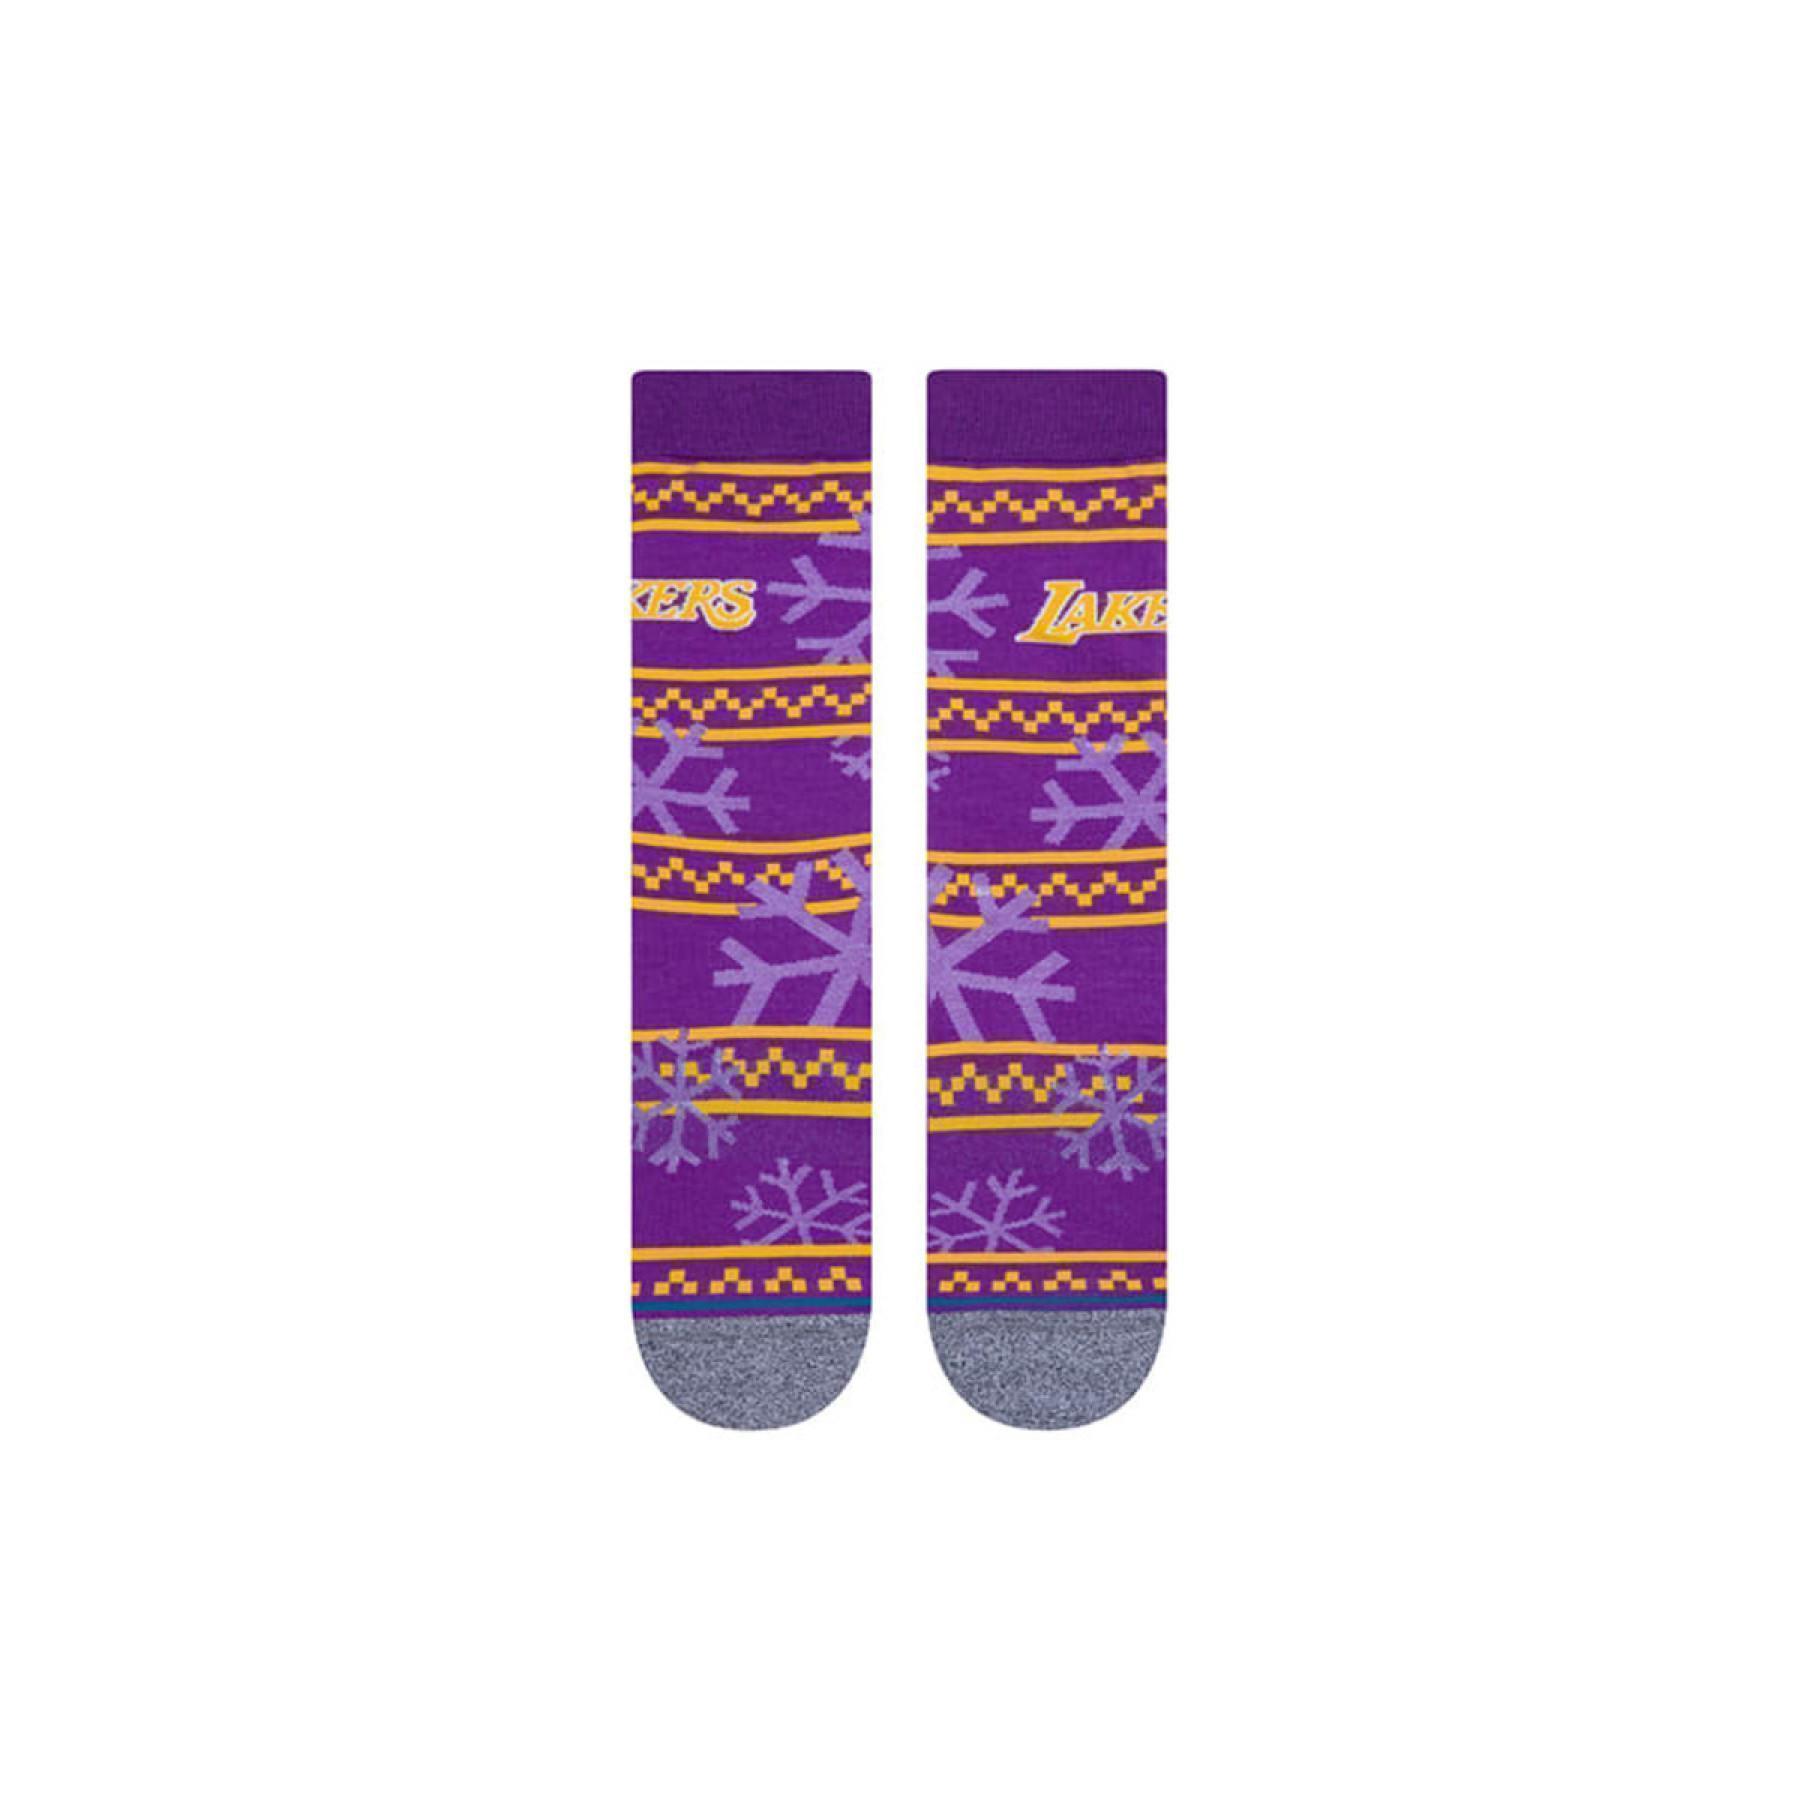 Socks Los Angeles Lakers